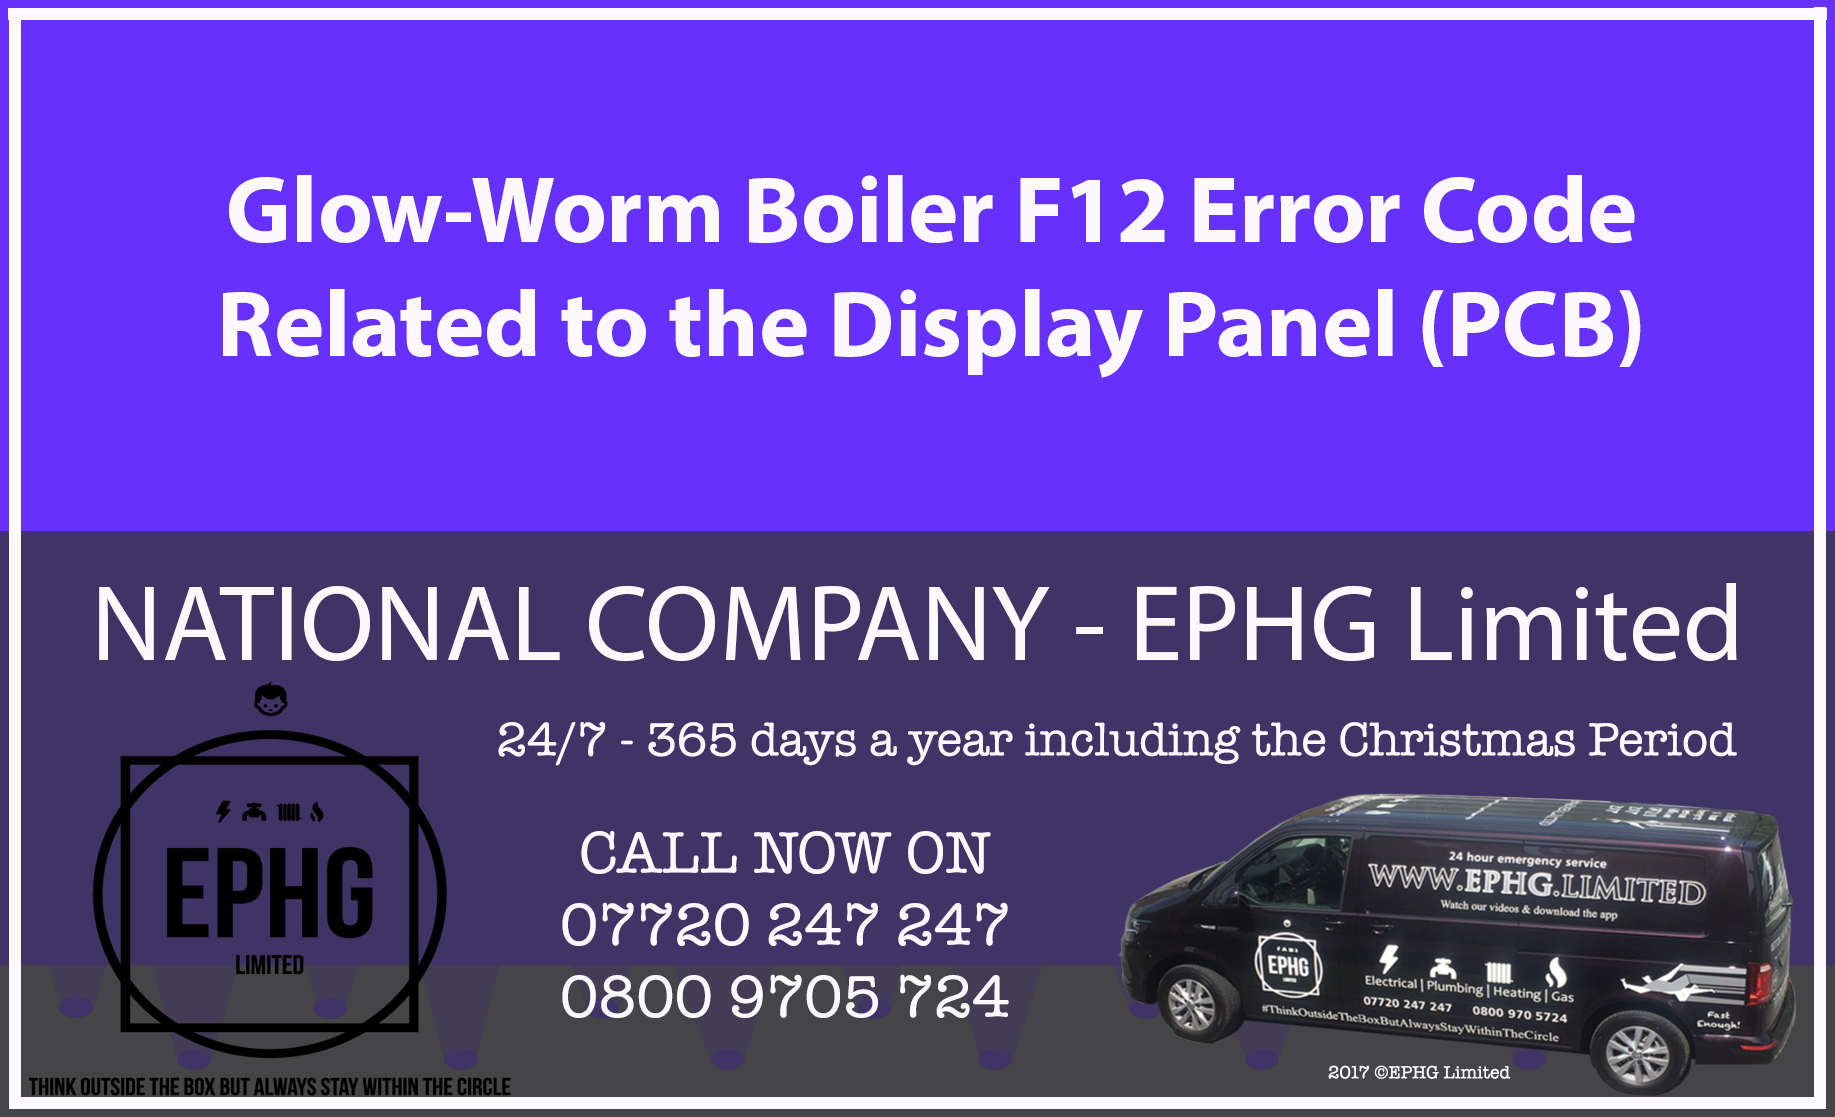 Glow-Worm boiler error code F12